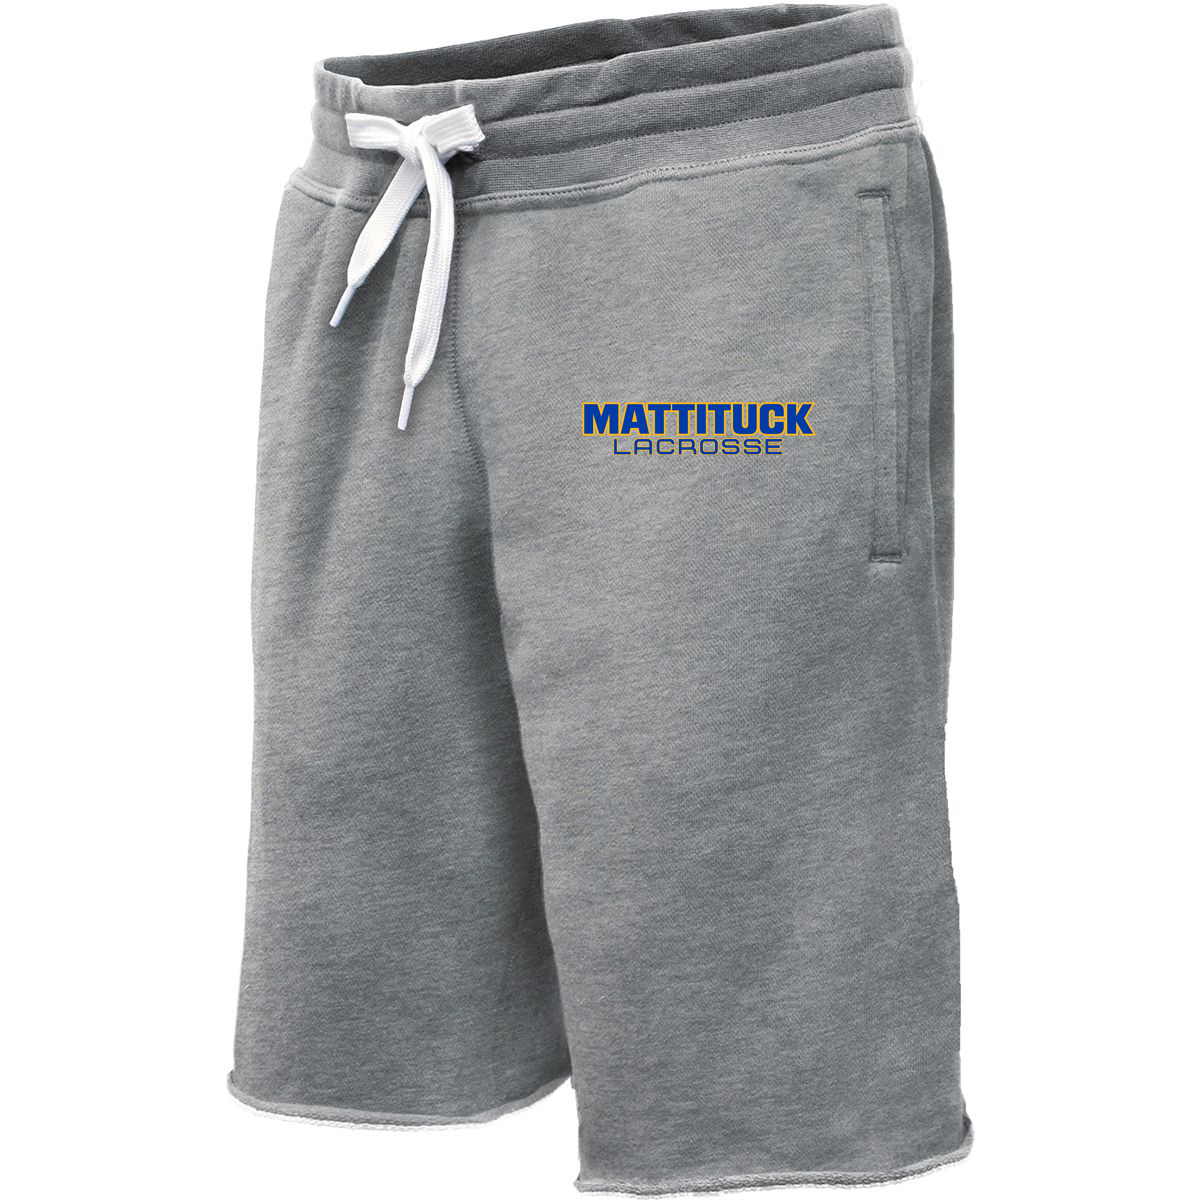 Mattituck Lacrosse Sweatshort